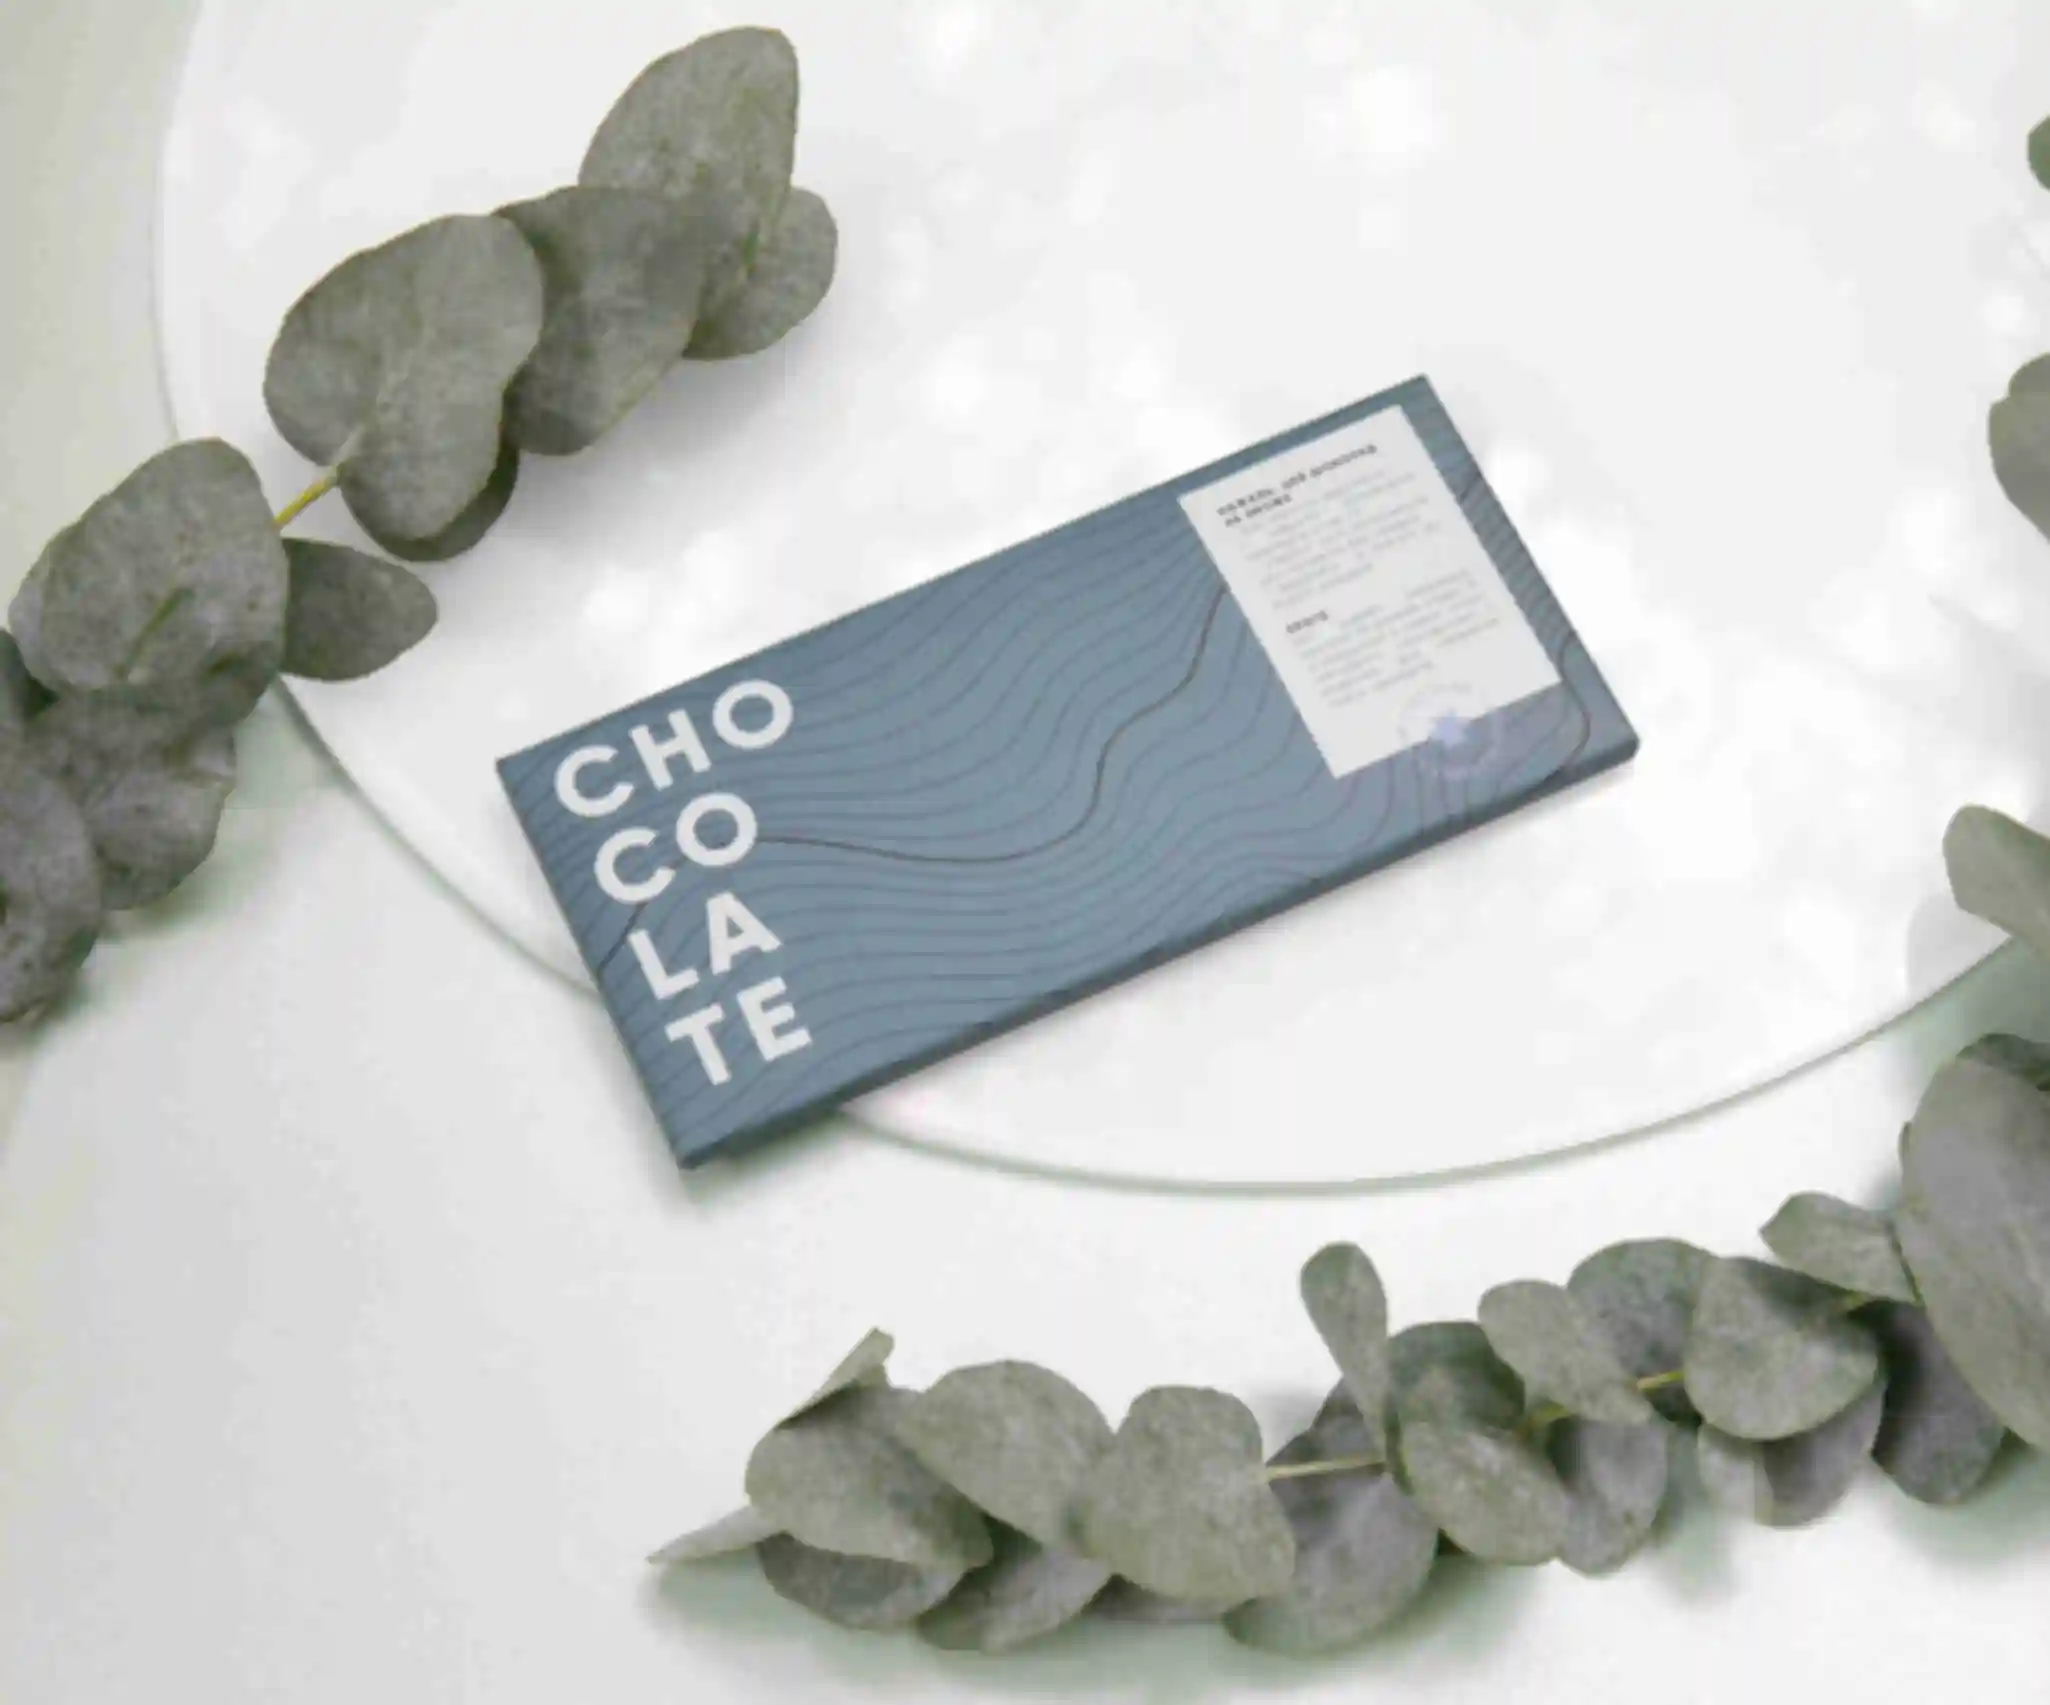 Черный шоколад с солёной карамелью • Подарок для дизайнера, художника, иллюстратора • Премиум-шоколад  для креативных сладкоежек. Фото №69